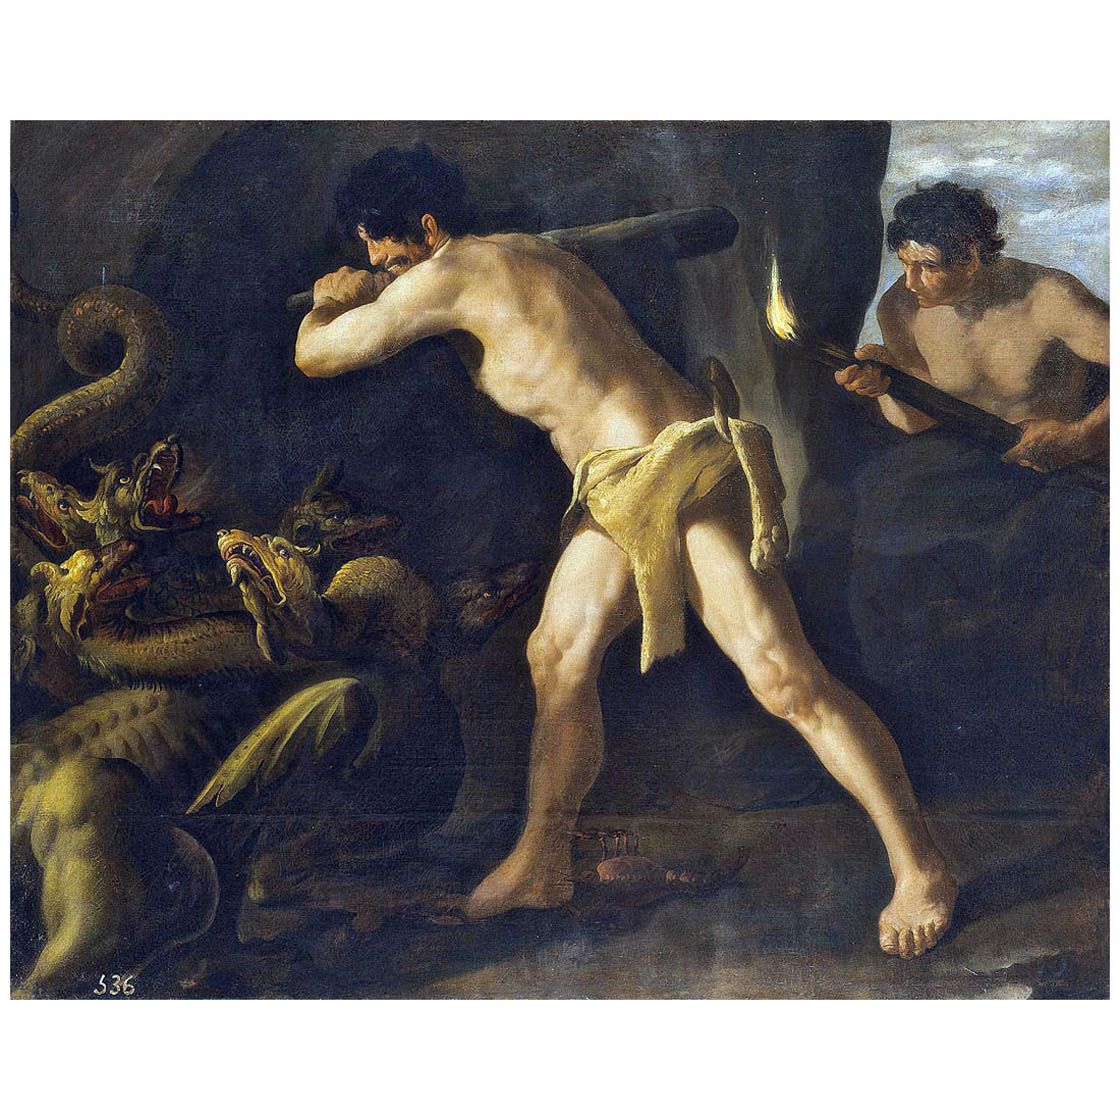 Francisco de Zurbaran. Hercules luncha con la Hydra. 1634. Museo del Prado